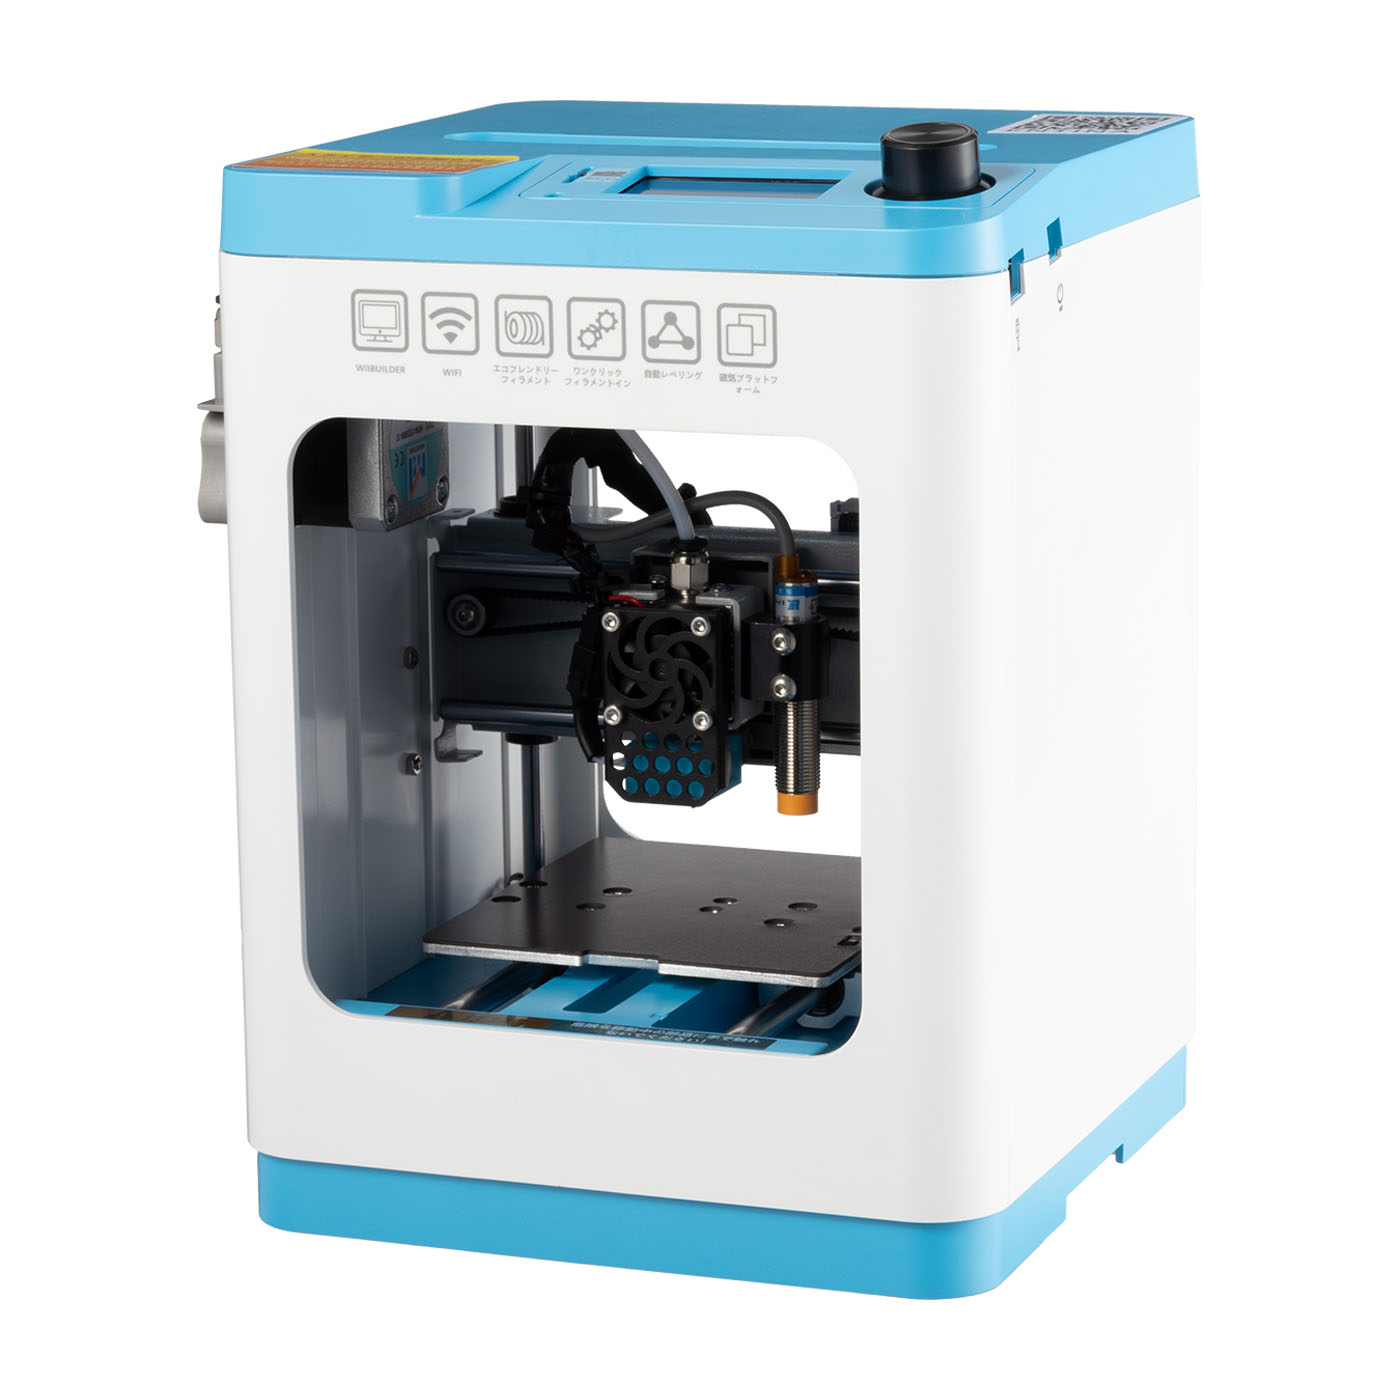 FLASHFORGE 3Dプリンター フィラメント 水溶性サポート材 pva 1.75mm 500g 3Dプリンター 3d printer PVA filament 送料無料 税込